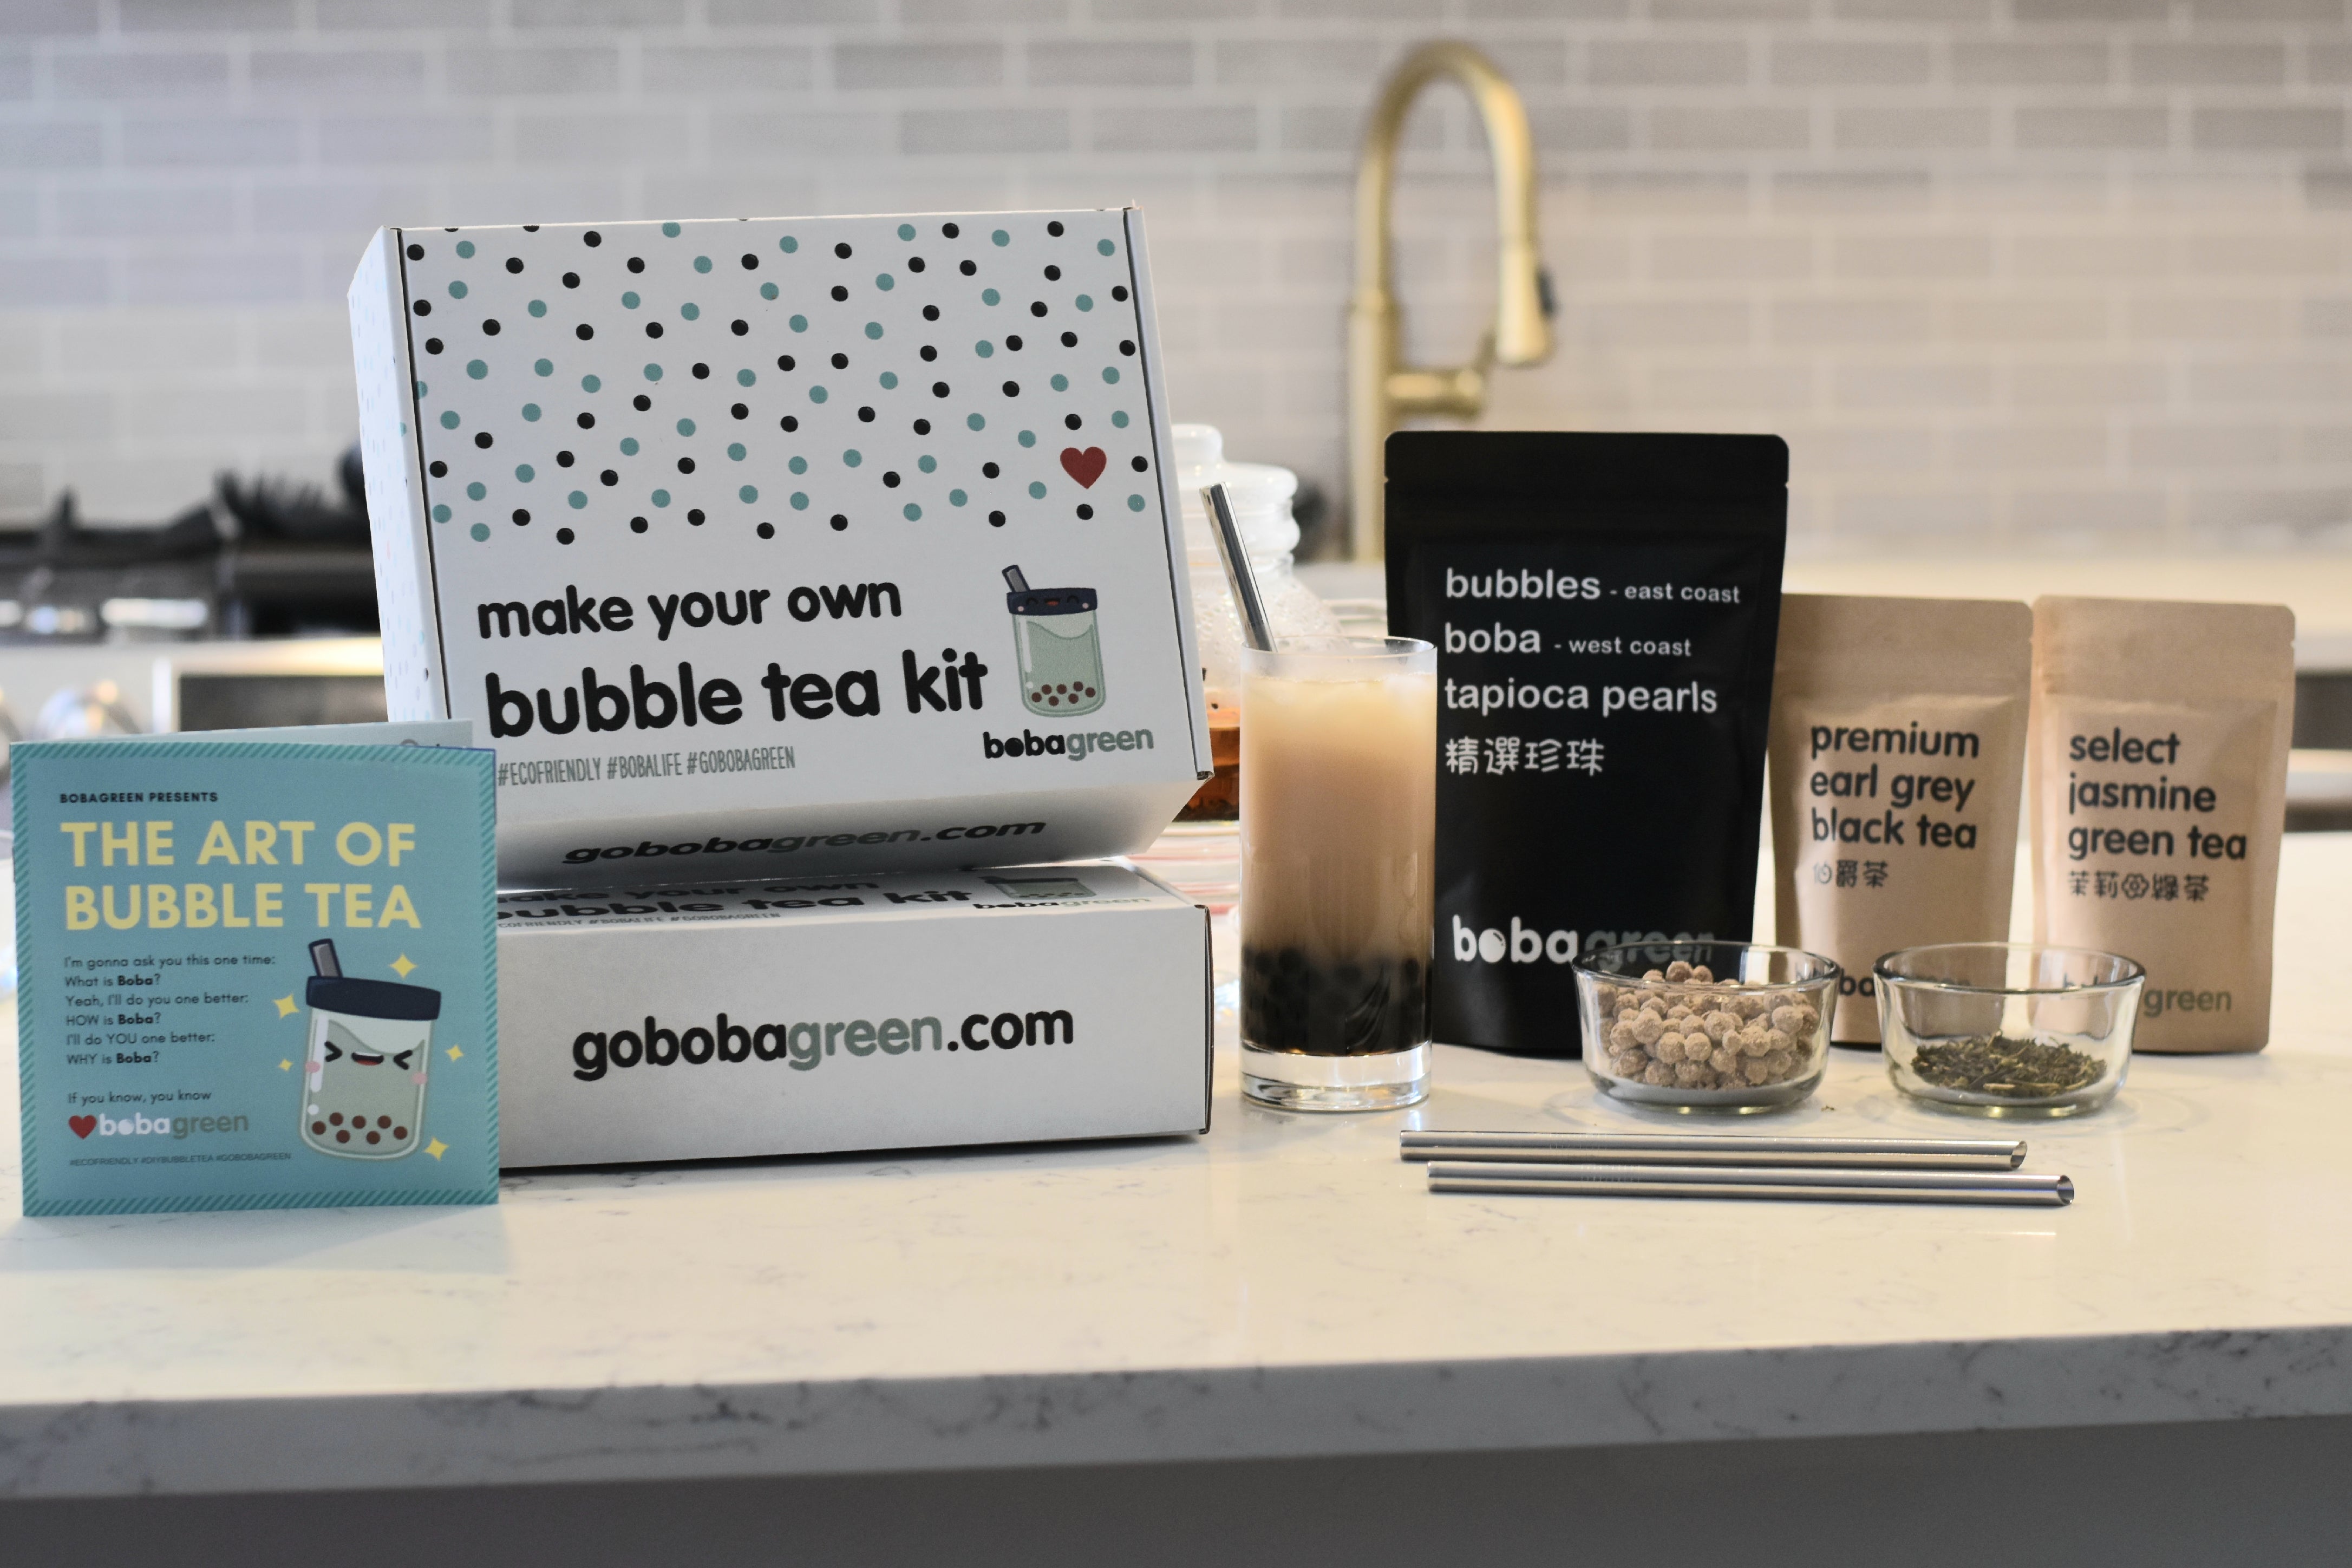 Introducing: DIY Bubble Tea kit!